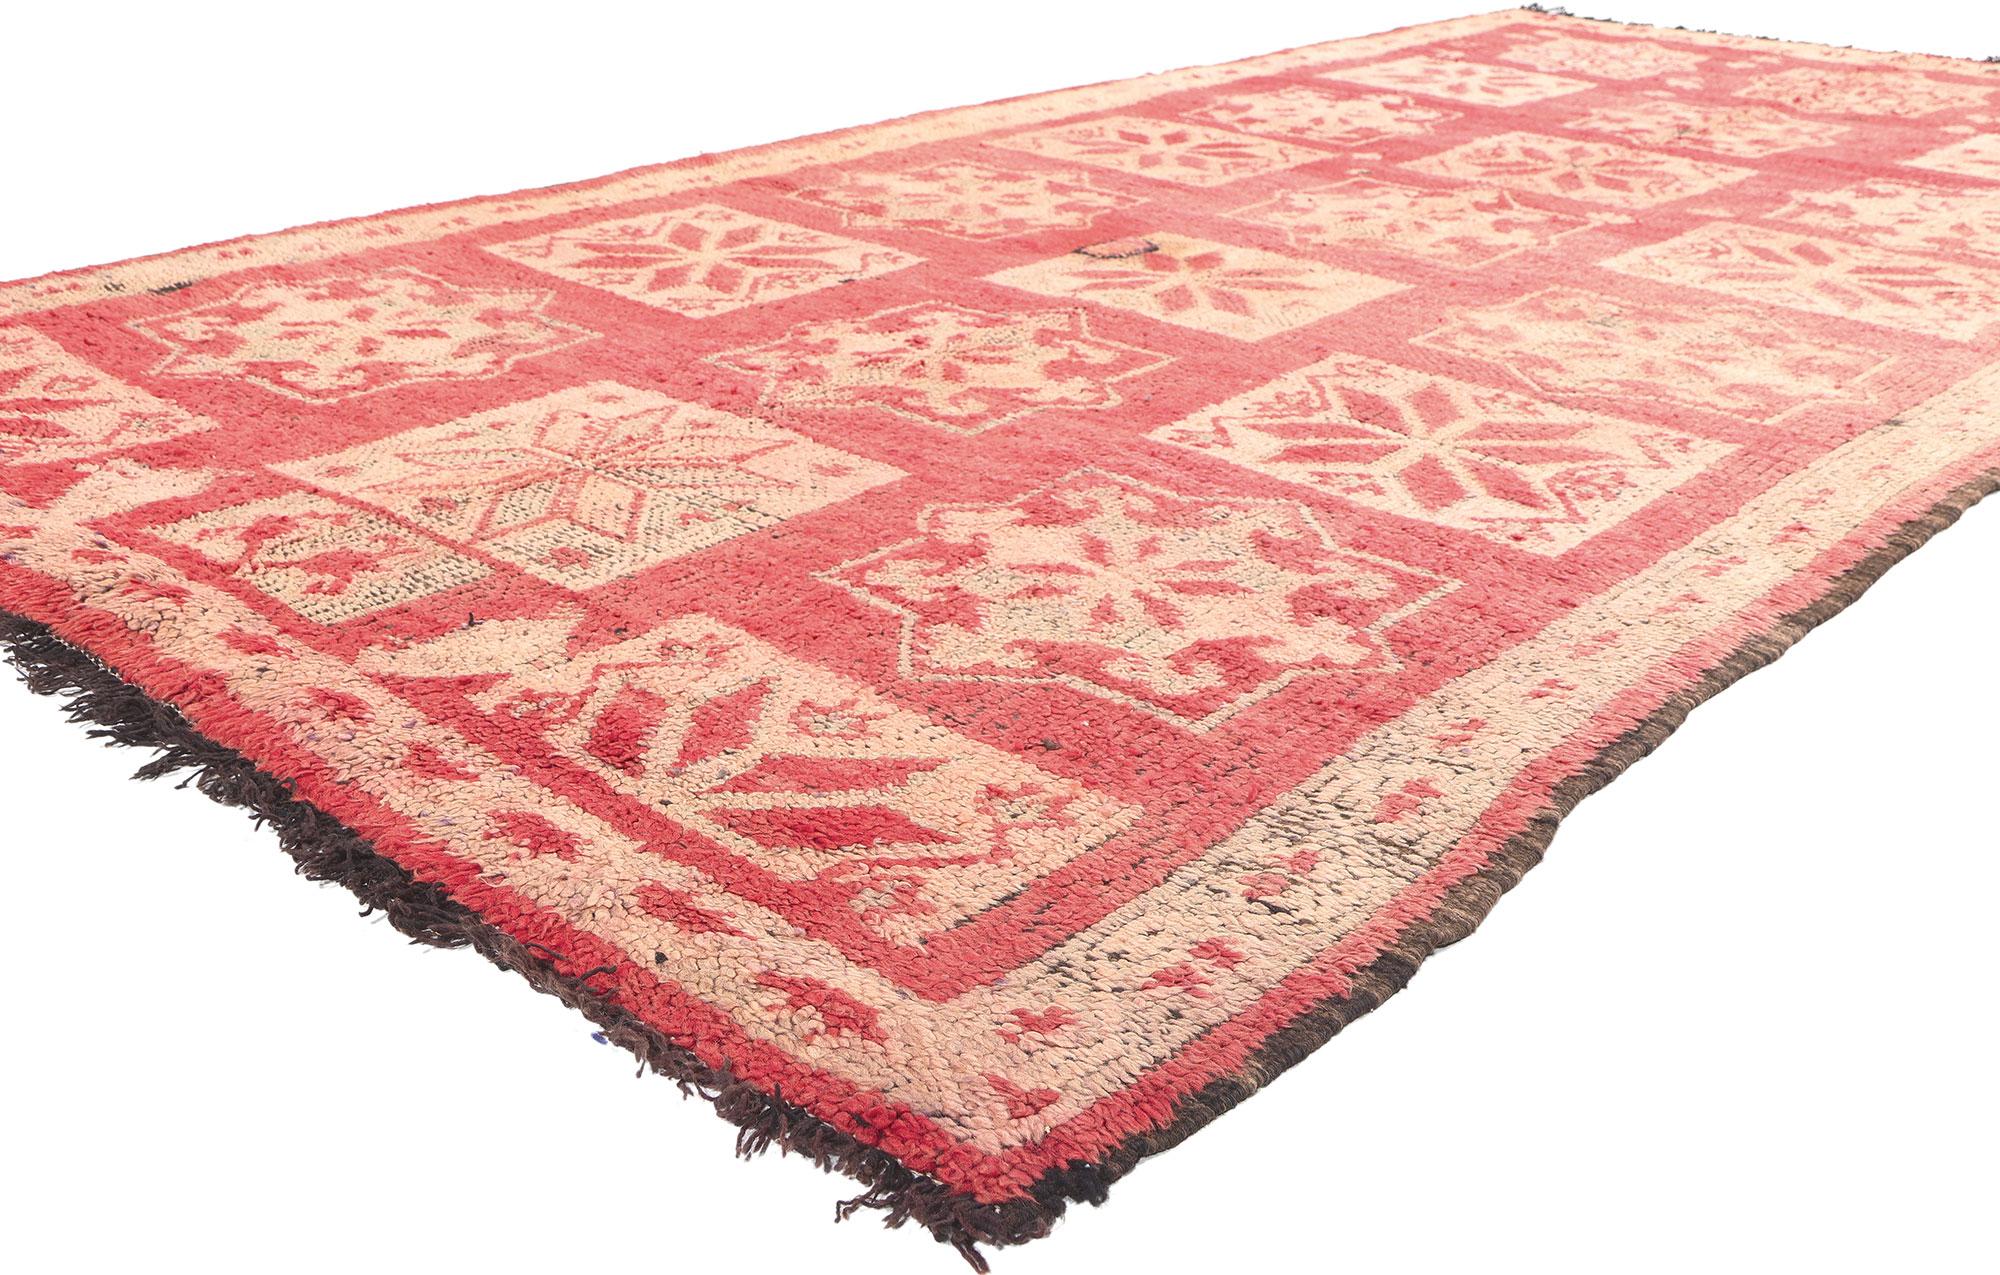 20982 Vintage Boujad Marokkanischer Teppich, 05'06 x 11'04. Begeben Sie sich auf eine bezaubernde Odyssee maurischer Eleganz mit jedem Schritt auf diesem handgeknüpften marokkanischen Boujad-Teppich aus Wolle, der aus der pulsierenden Stadt Boujad